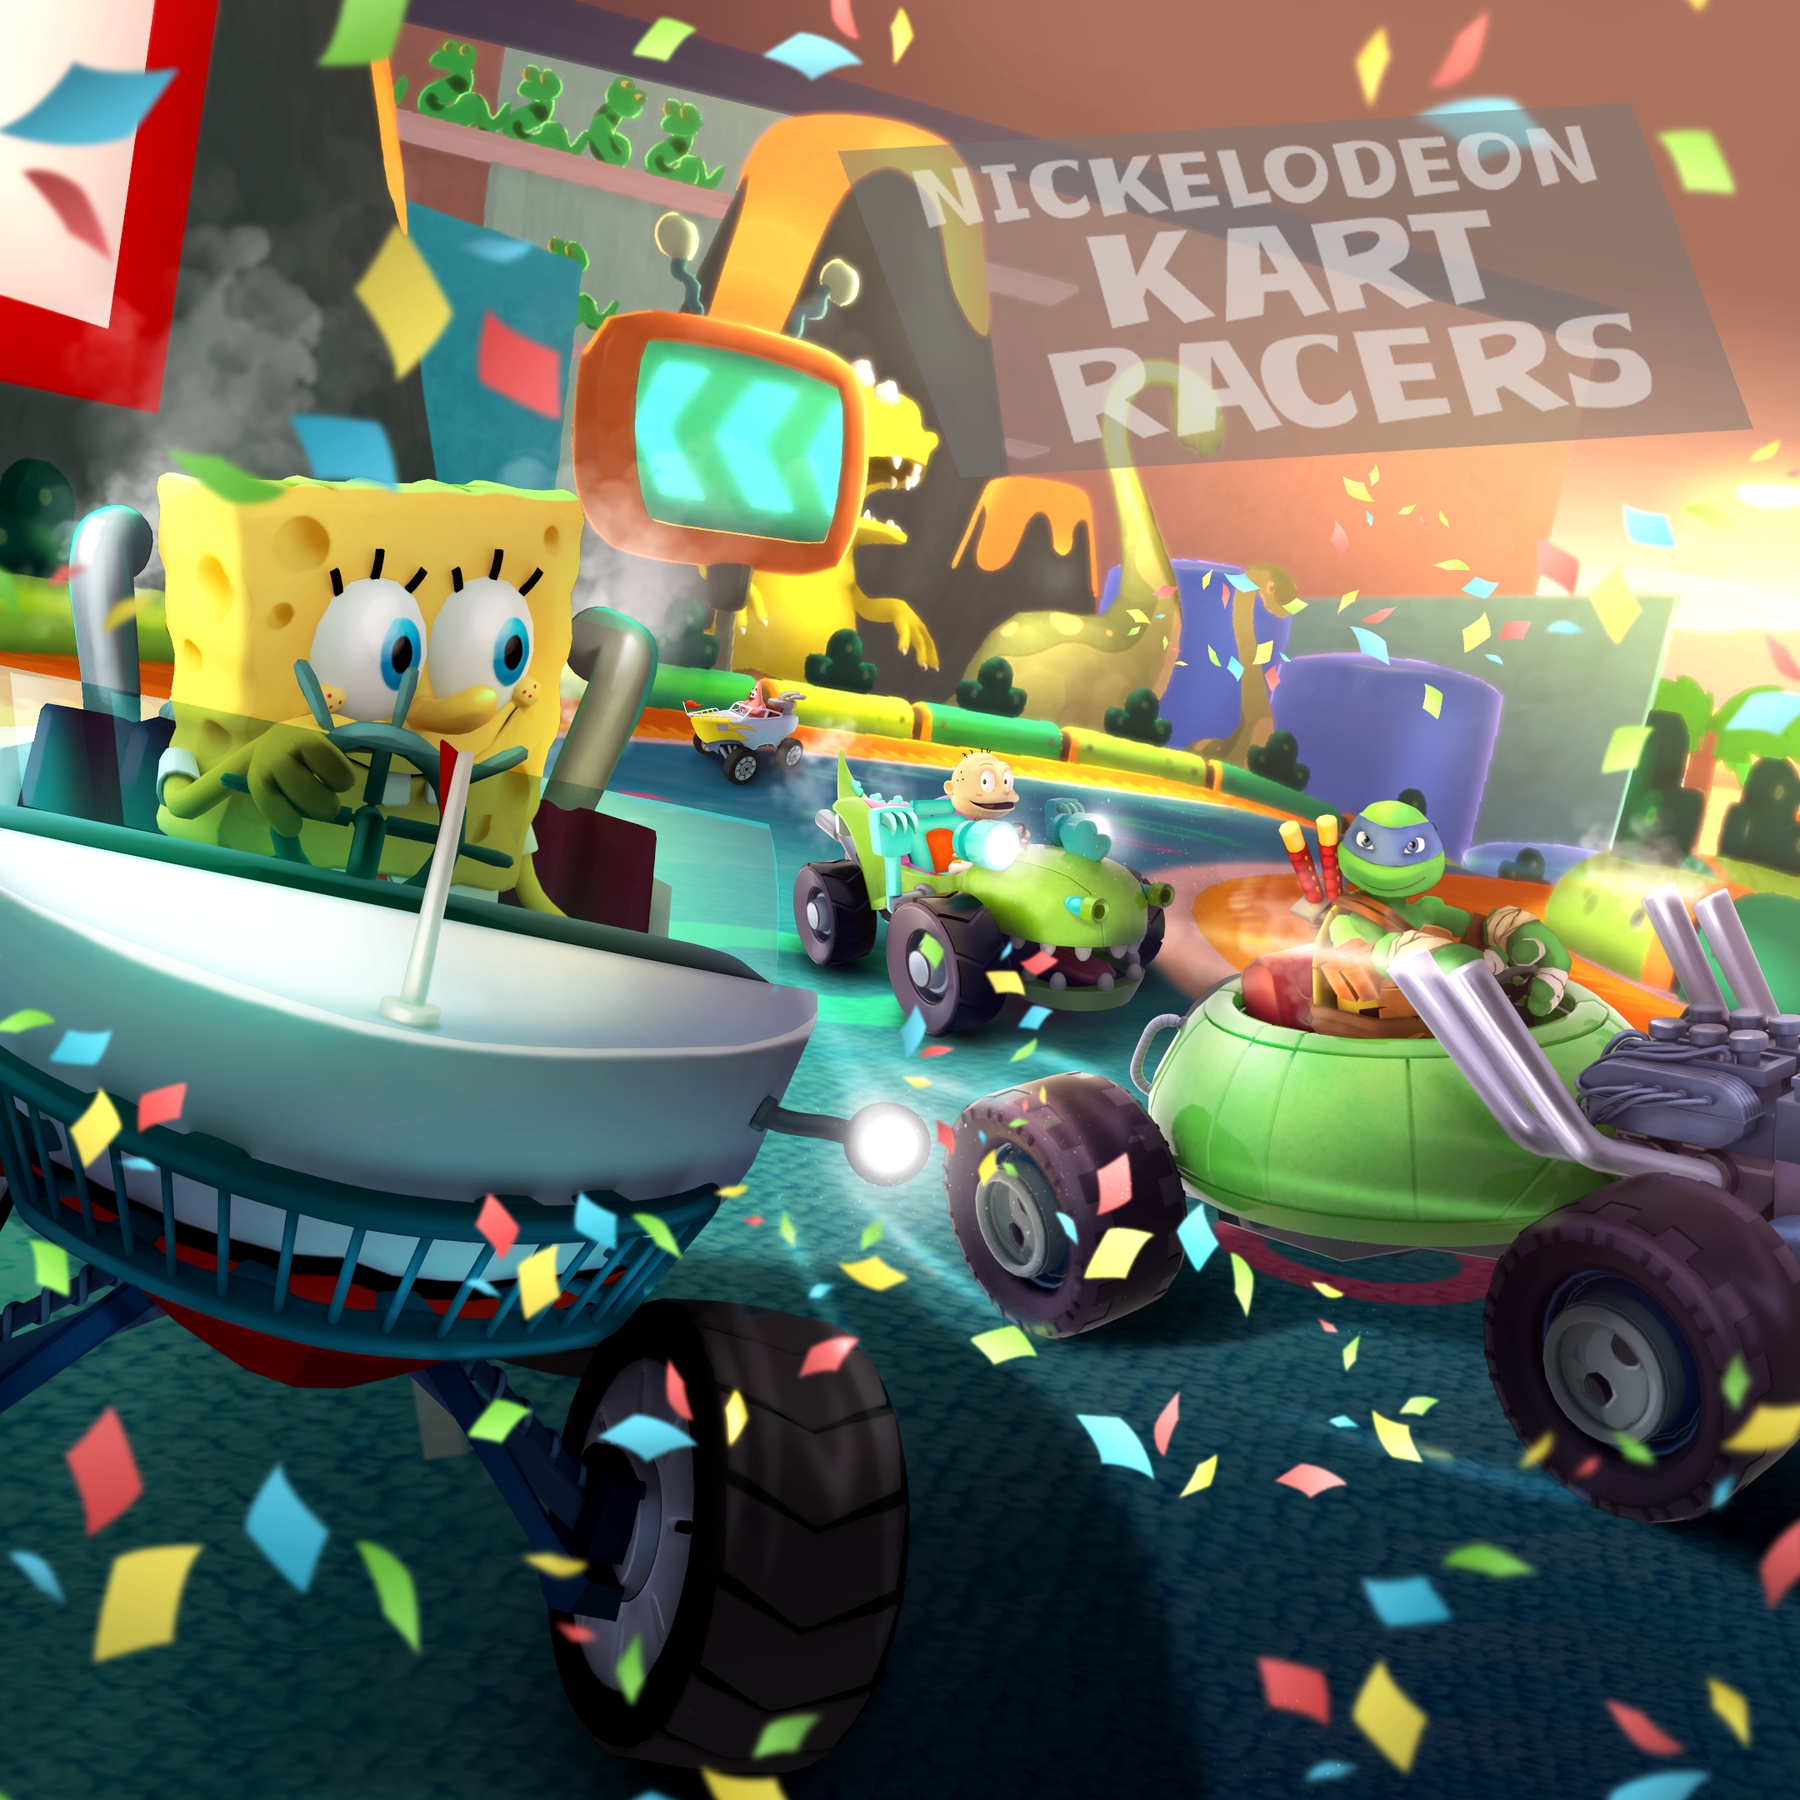 Nickelodeon Kart Racers recorrerá nuestras consolas a finales de año